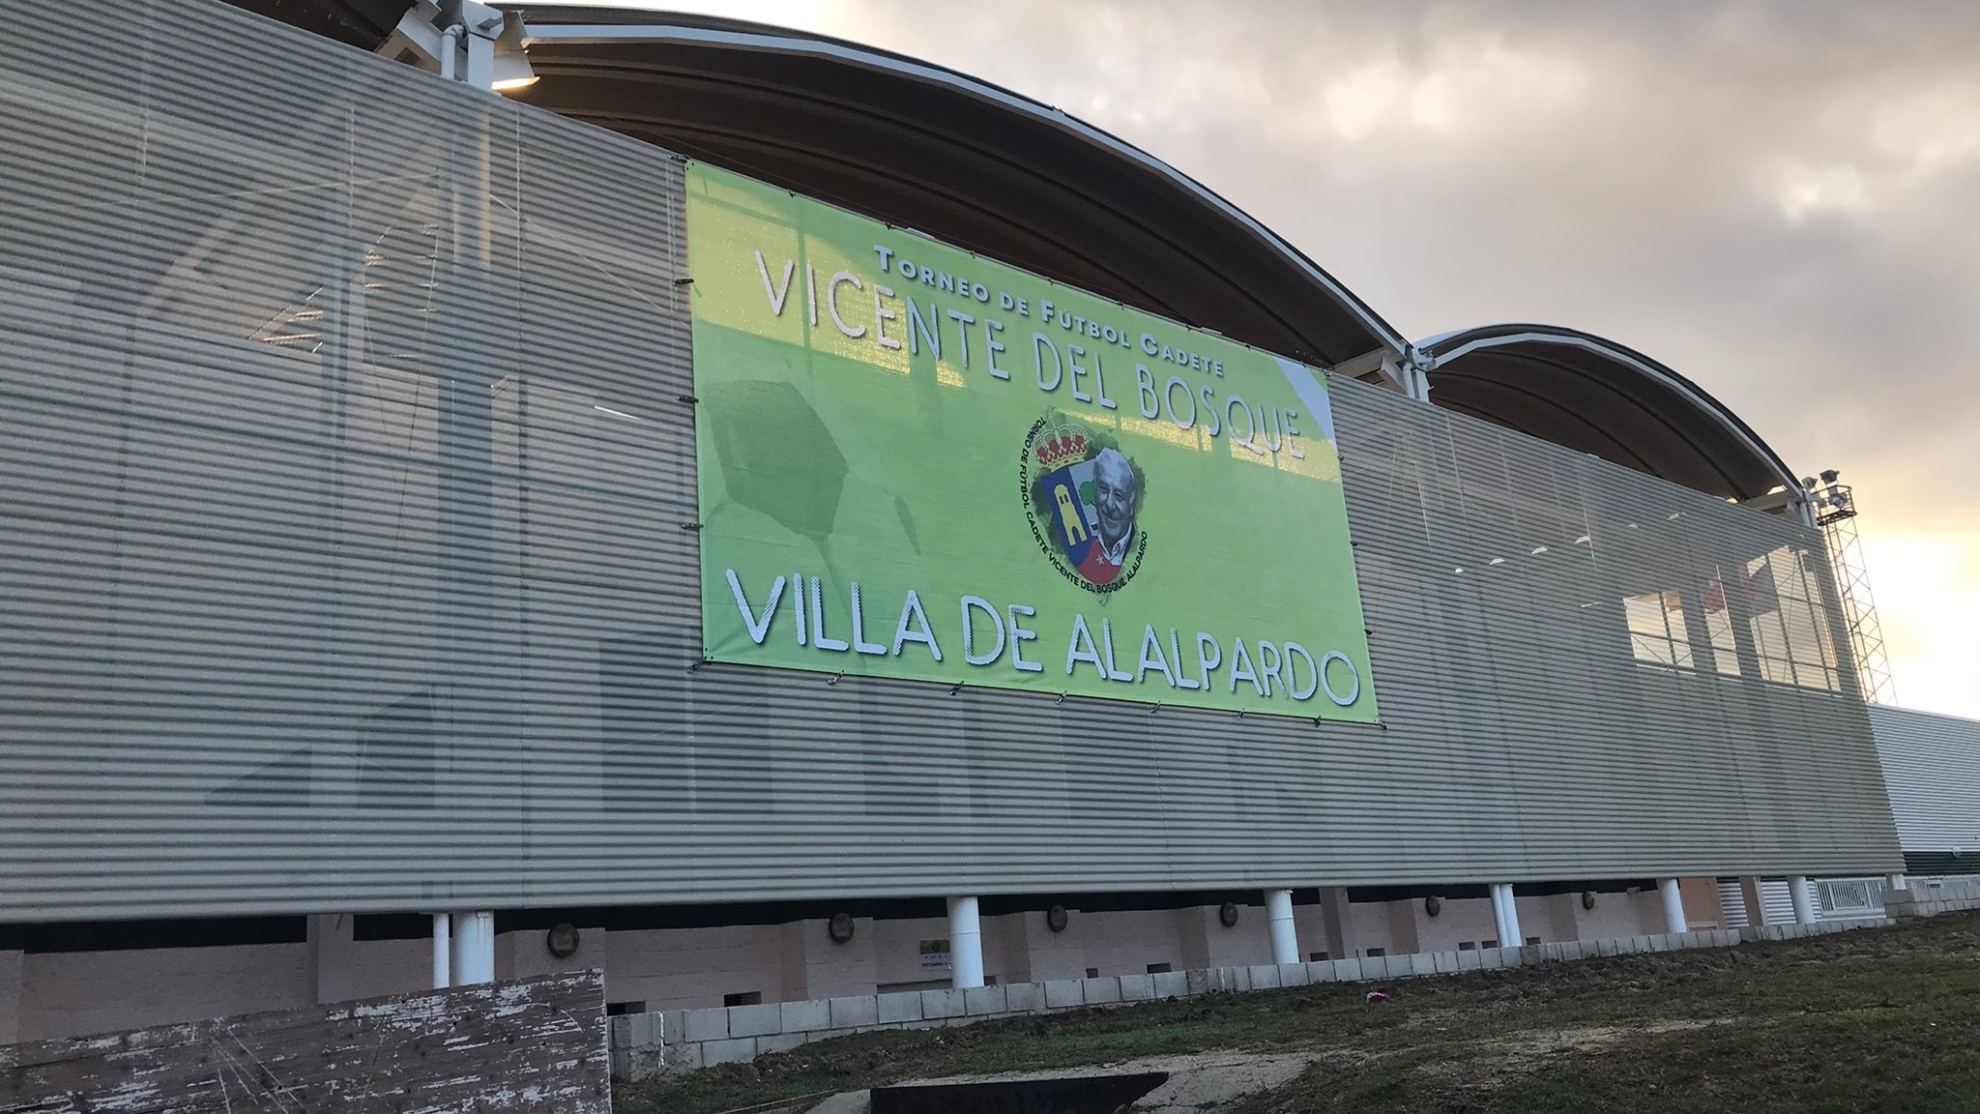 Hierro, Schuster, Futre o Julen Guerrero, premiados en la  presentaci�n del VI Torneo de F�tbol Cadete Vicente del Bosque